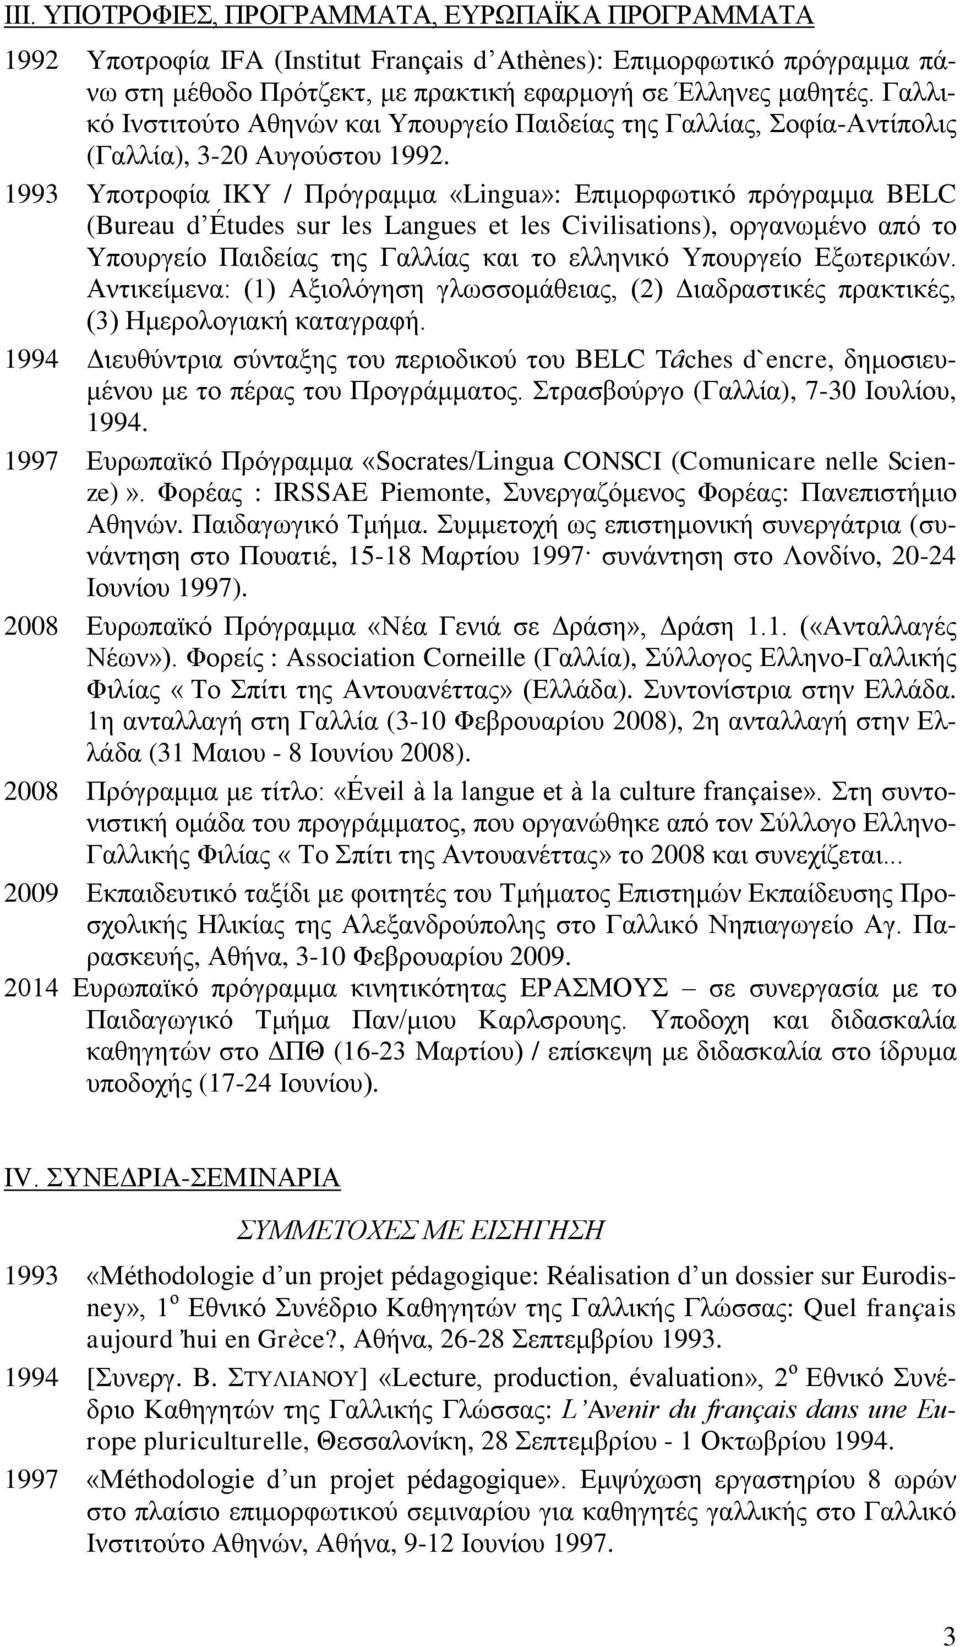 1993 Υποτροφία IKY / Πρόγραμμα «Lingua»: Επιμορφωτικό πρόγραμμα BELC (Bureau d Études sur les Langues et les Civilisations), οργανωμένο από το Υπουργείο Παιδείας της Γαλλίας και το ελληνικό Υπουργείο